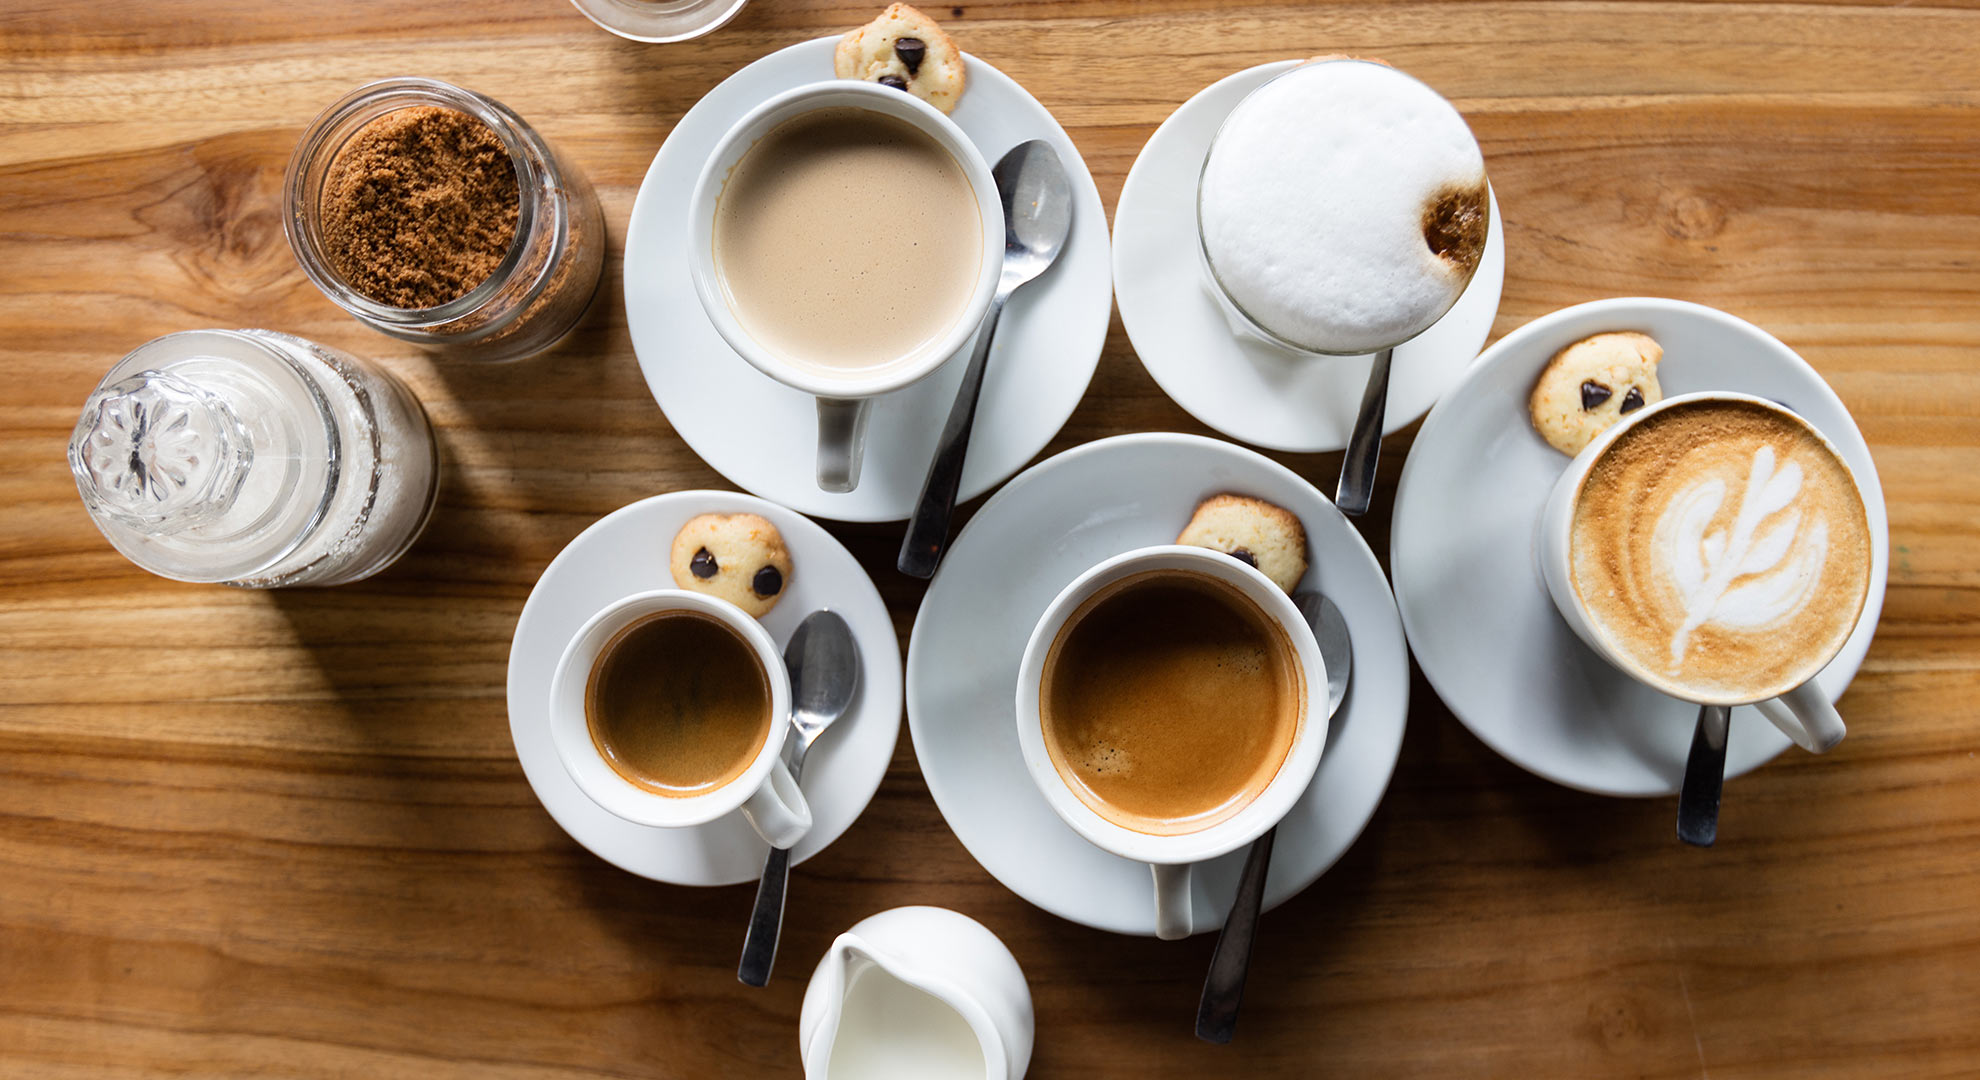 La genética desempeña un papel en la preferencia del café o el té | The  Objective | Noticias exclusivas y opiniones libres en abierto